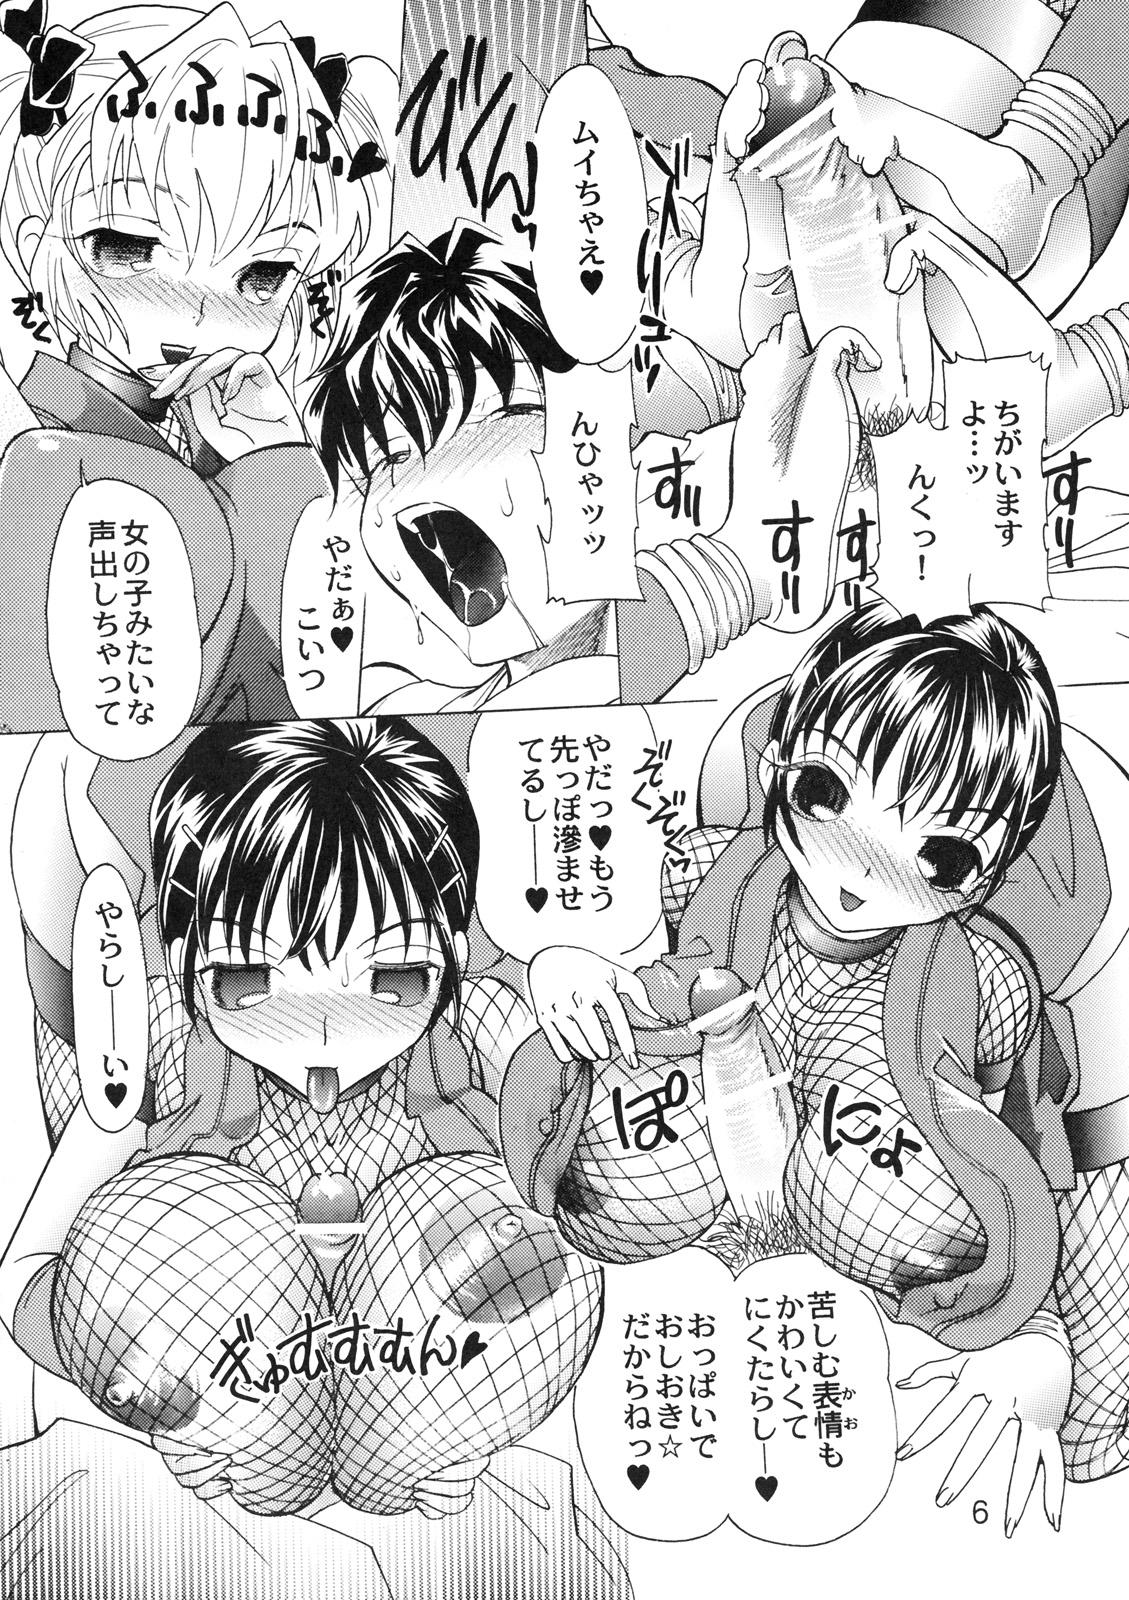 Blackmail Kunoichi Gahou 5 Man - Page 5